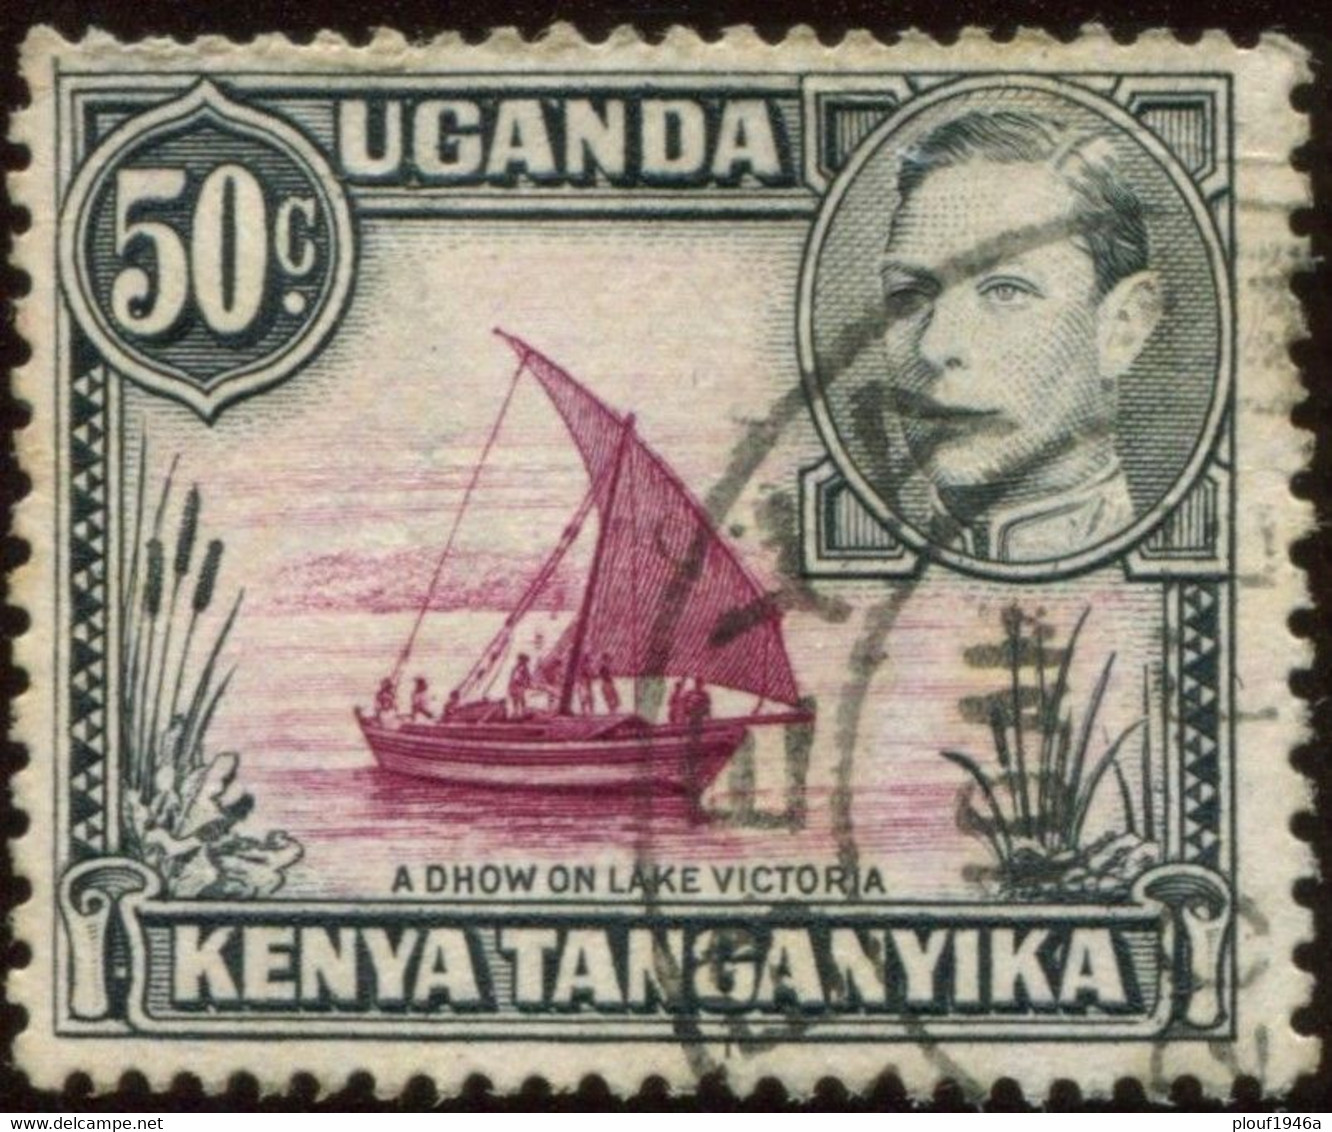 Pays : 260,1 (Kenya-Ouganda-Tanganyika )  Yvert Et Tellier N° :  56 (o) / Stanley & Gibbons  : 144 (o) - Kenya, Uganda & Tanganyika